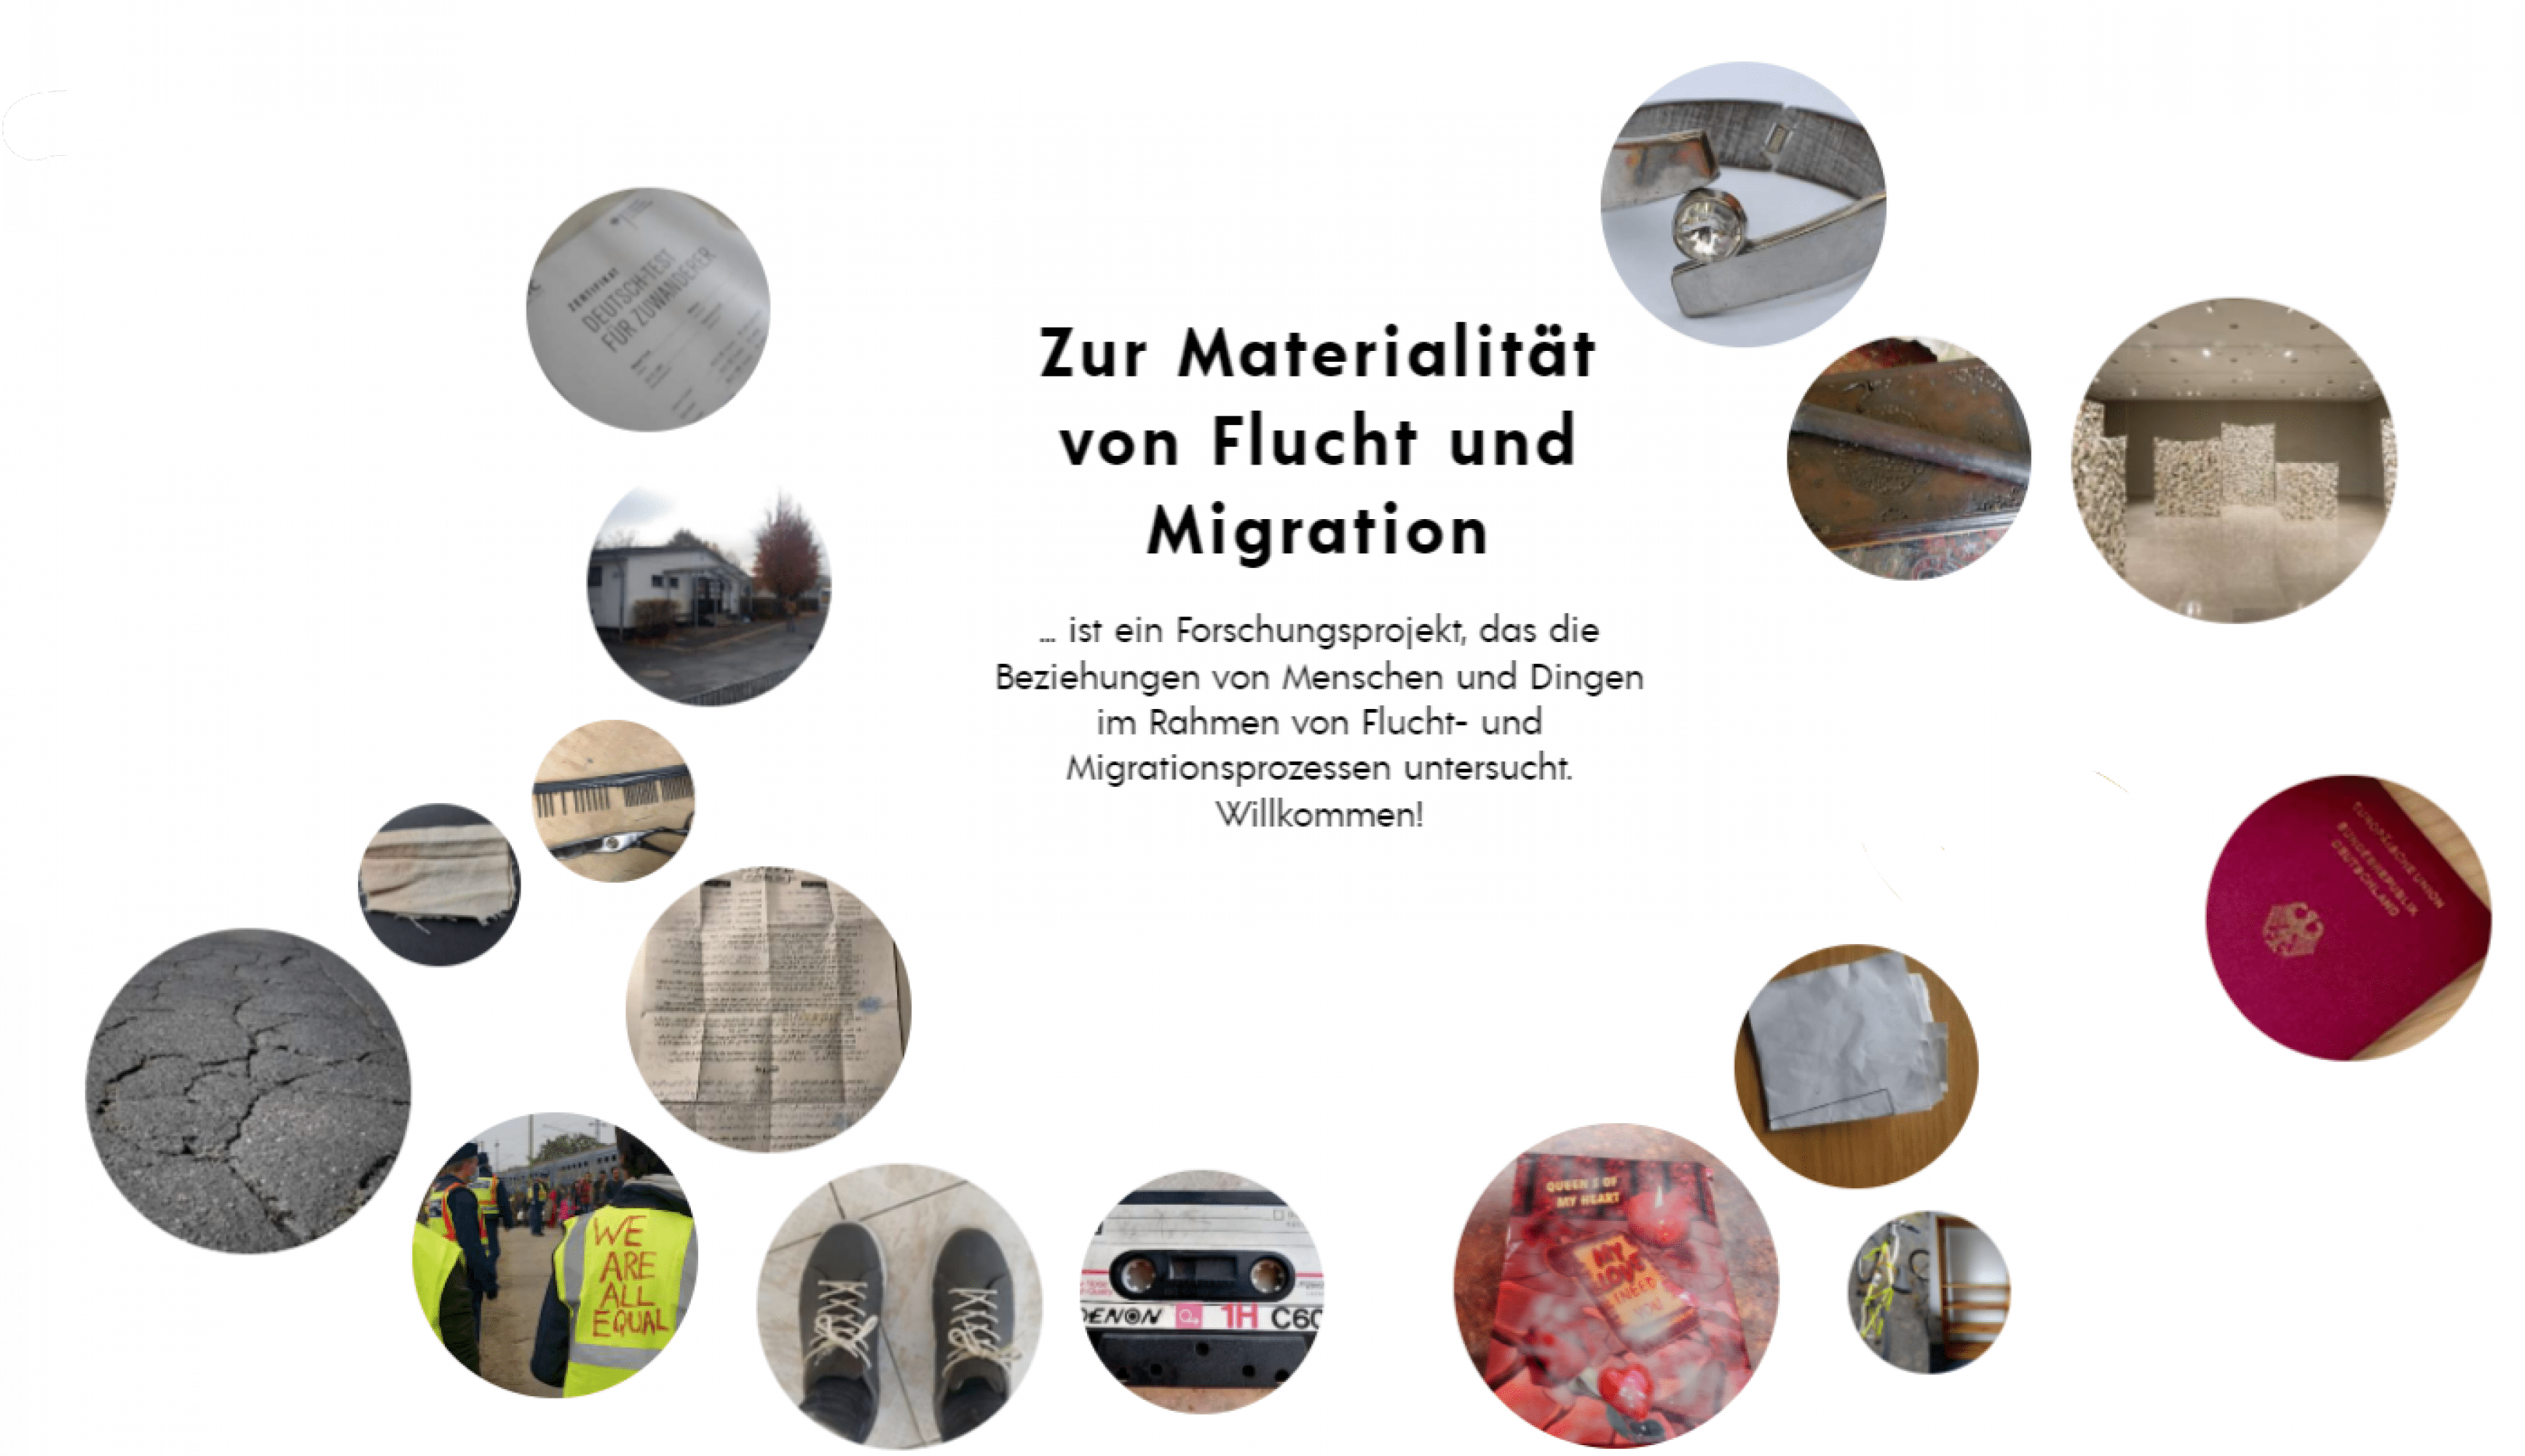 Objects as Means of Motivation – Zur Materialität von Flucht und Migration